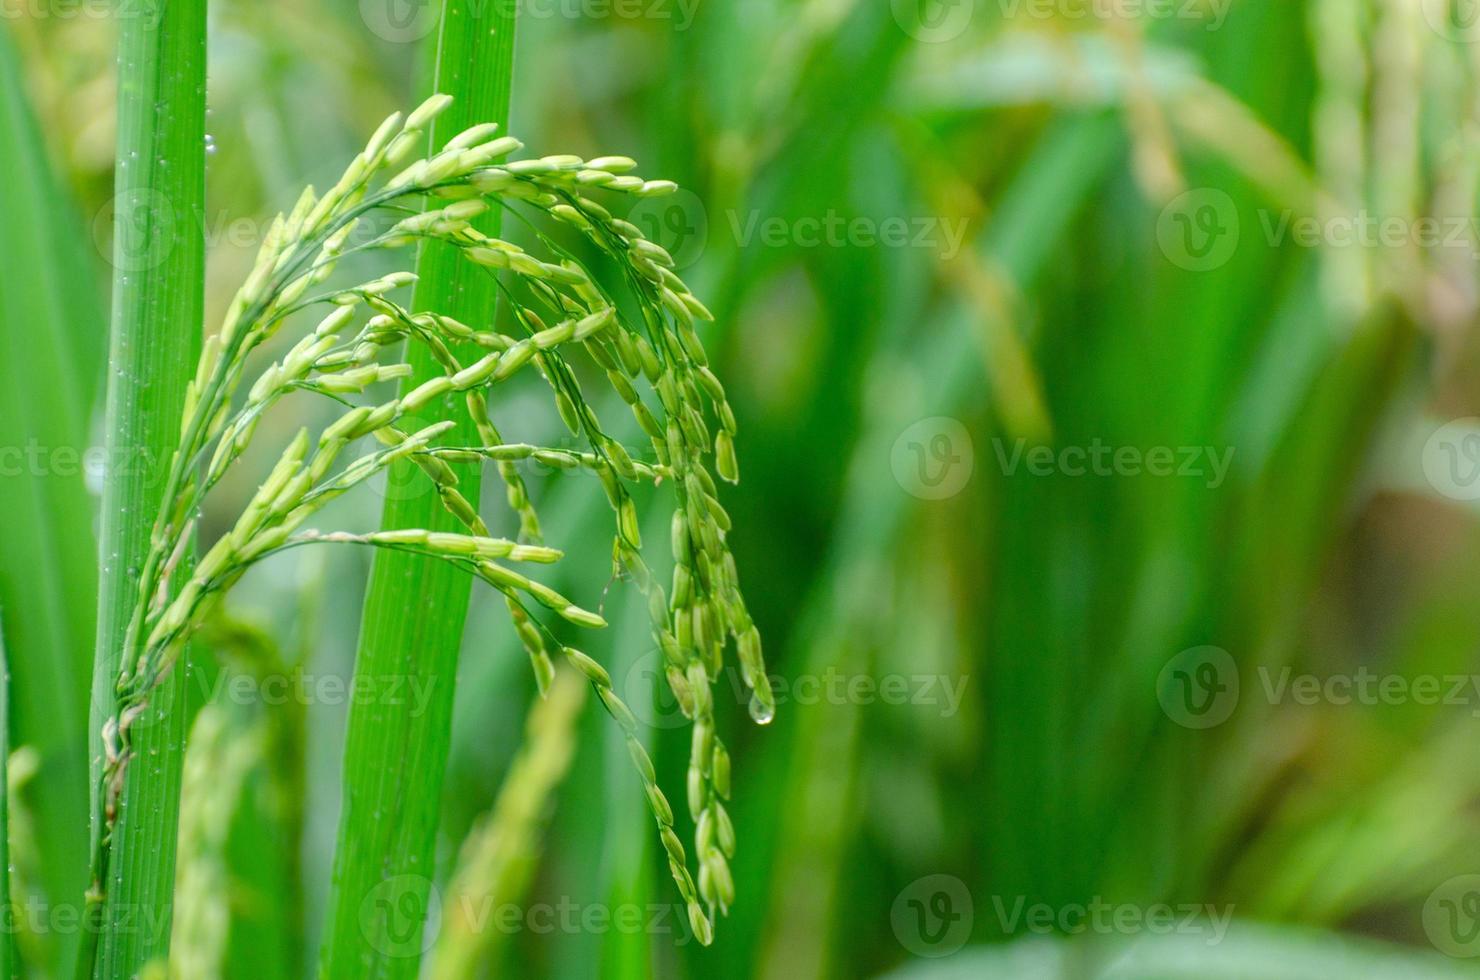 le riz vert presque mûr est dans le gros plan des pâturages verts luxuriants photo